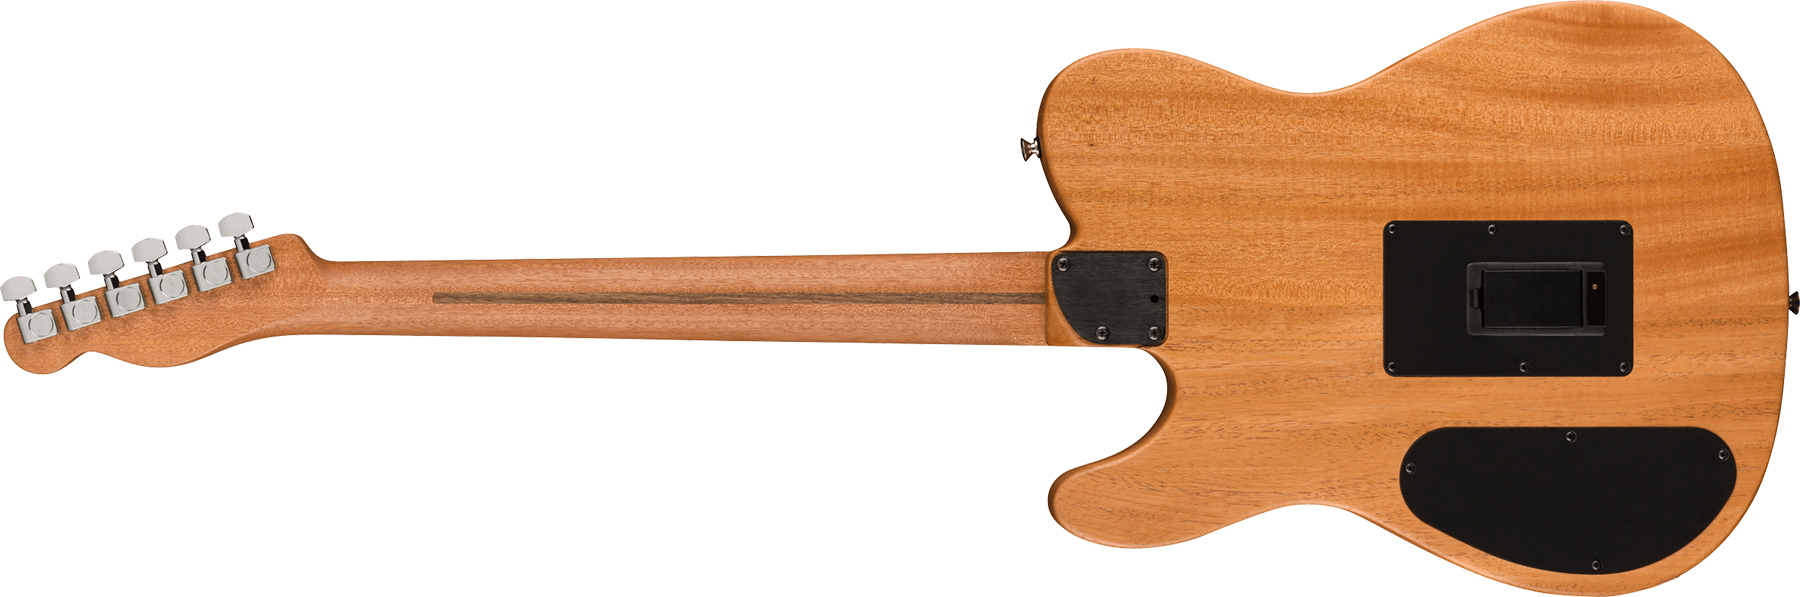 Fender Acoustasonic Tele Player Mex Epicea Acajou Rw - Butterscotch Blonde - Guitare Electro Acoustique - Variation 1